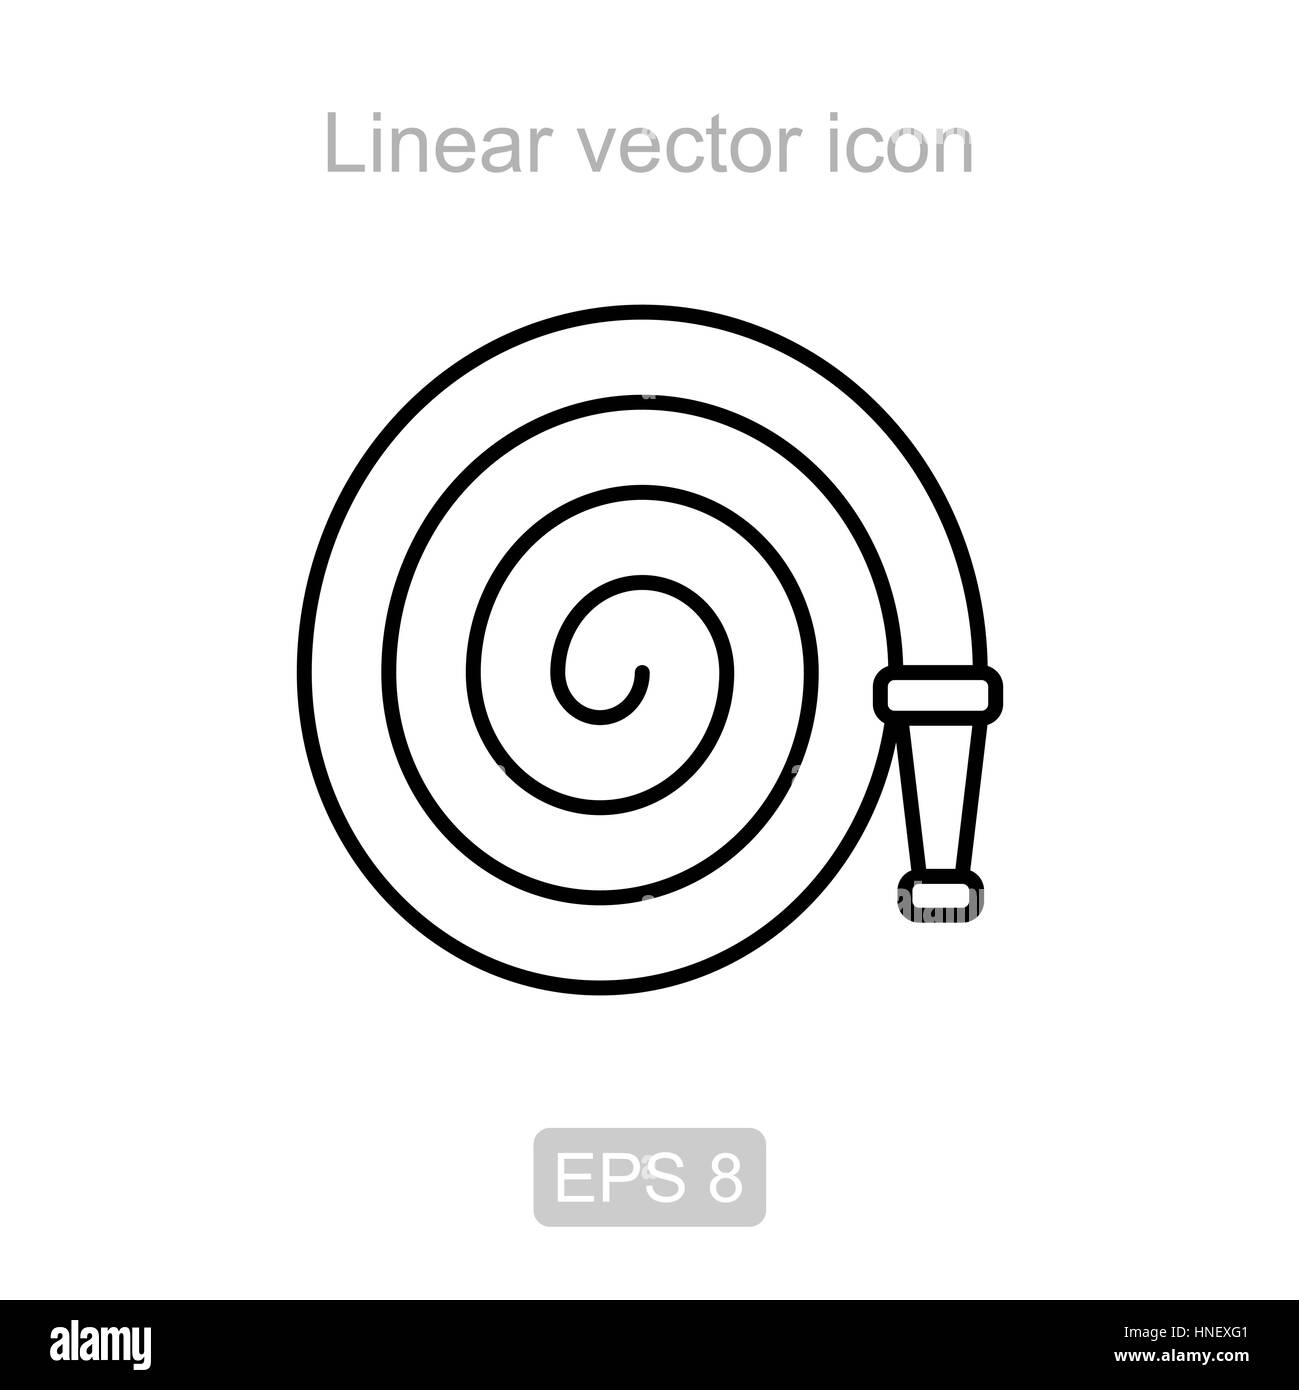 Fire hose. Linear vector icon. Stock Vector